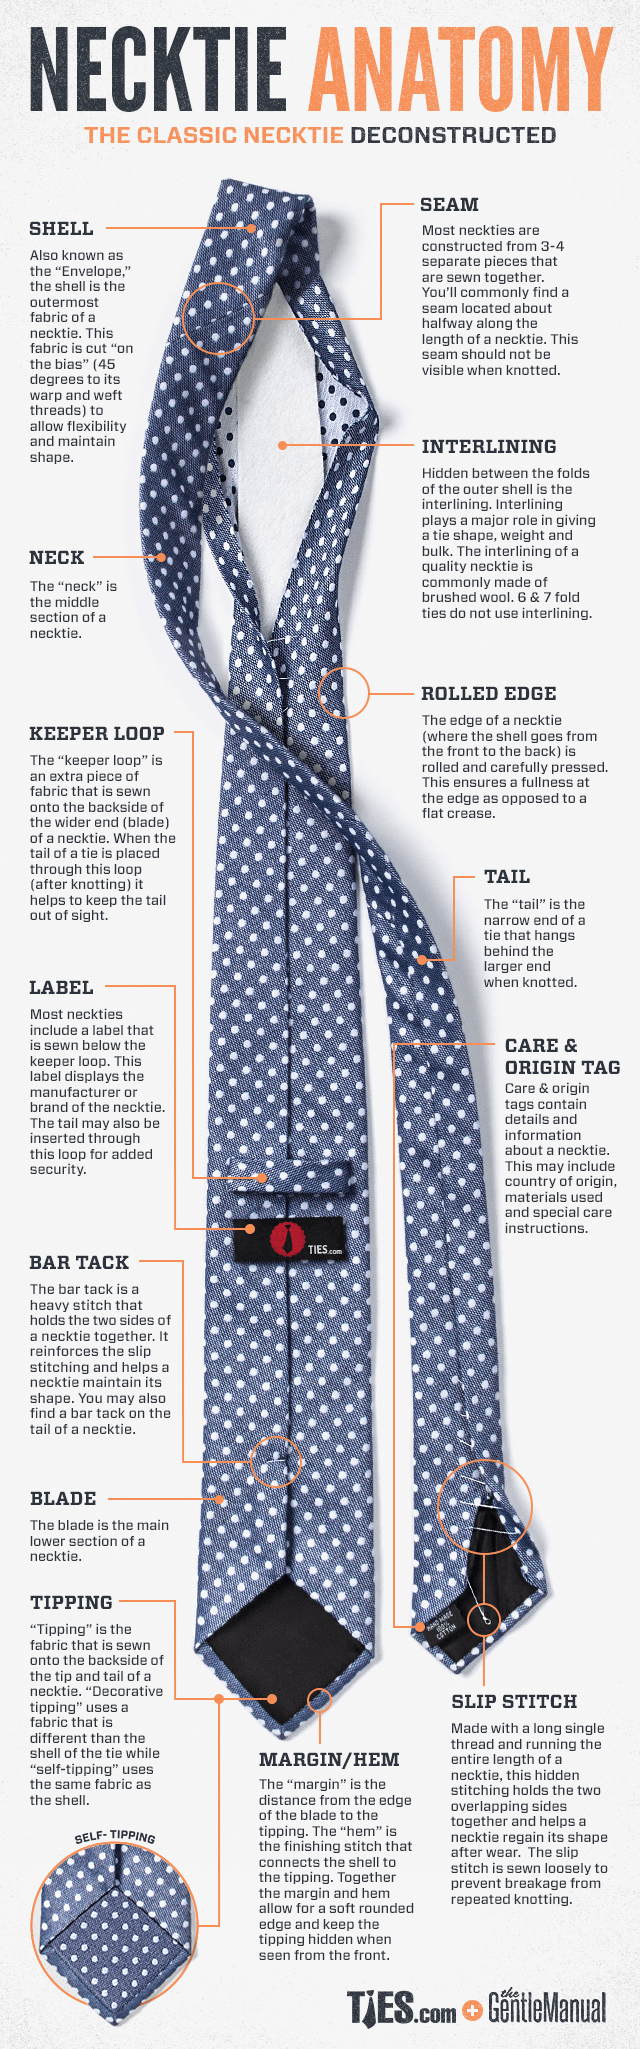 Necktie Anatomy